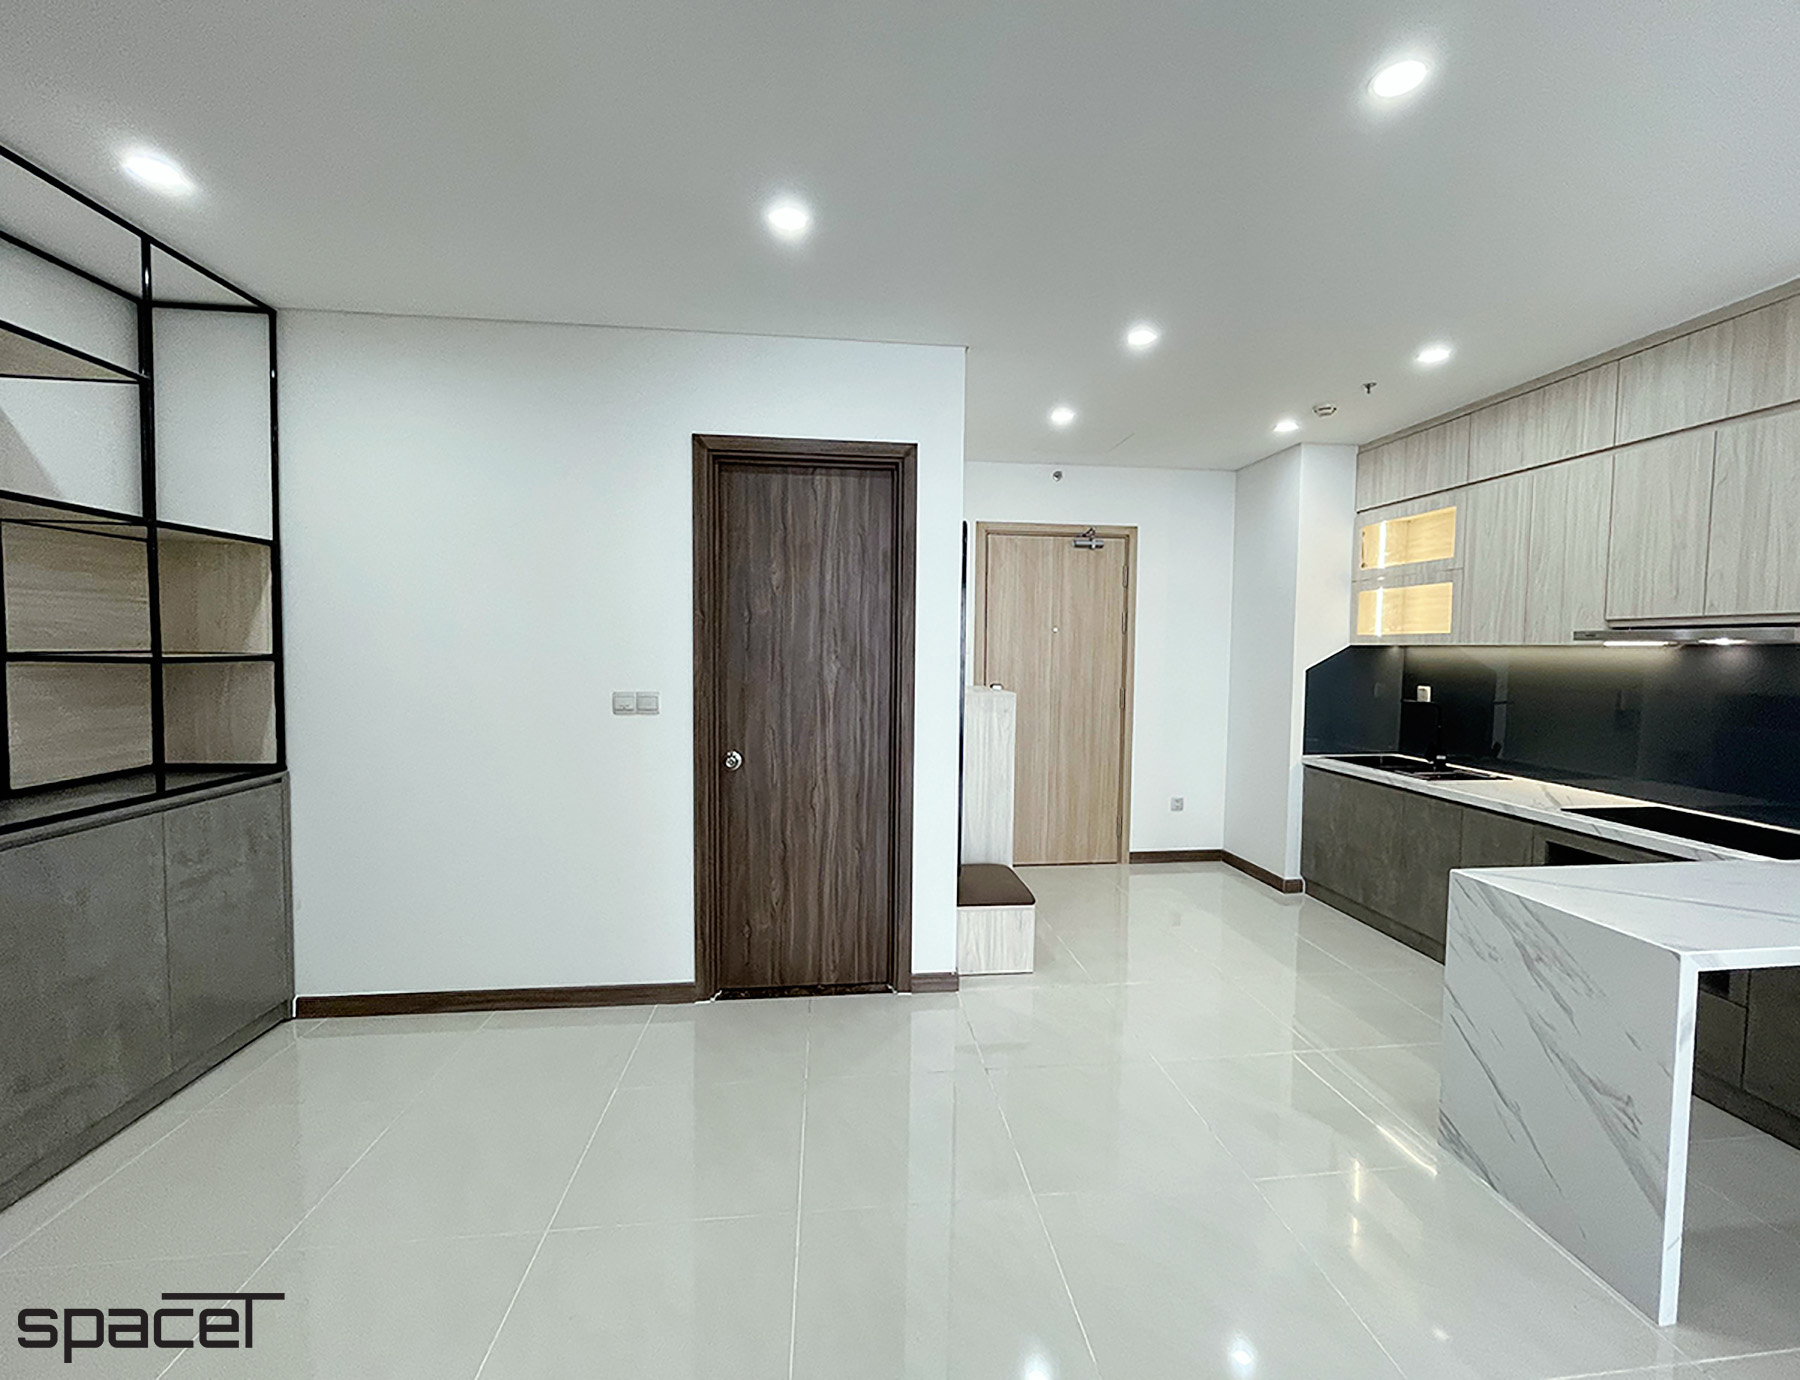 Phòng bếp, phong cách Hiện đại Modern, hoàn thiện nội thất, căn hộ Iris 4 Hà Đô Centrosa Garden